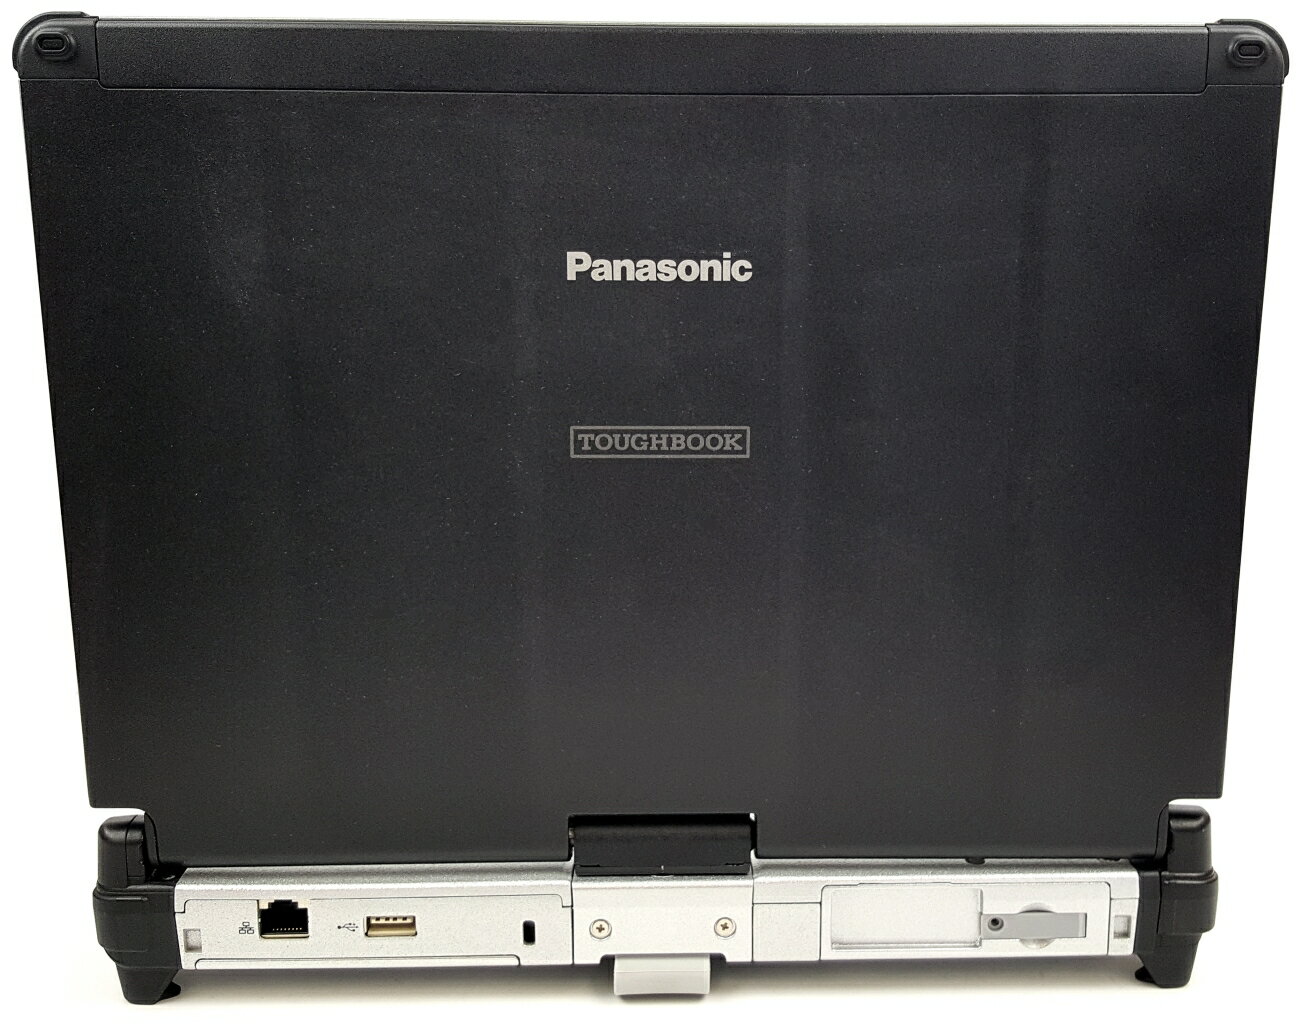 タッチパネルノートPC Panasonic CF-C2 i5 8GB Win10 新作が激安通販